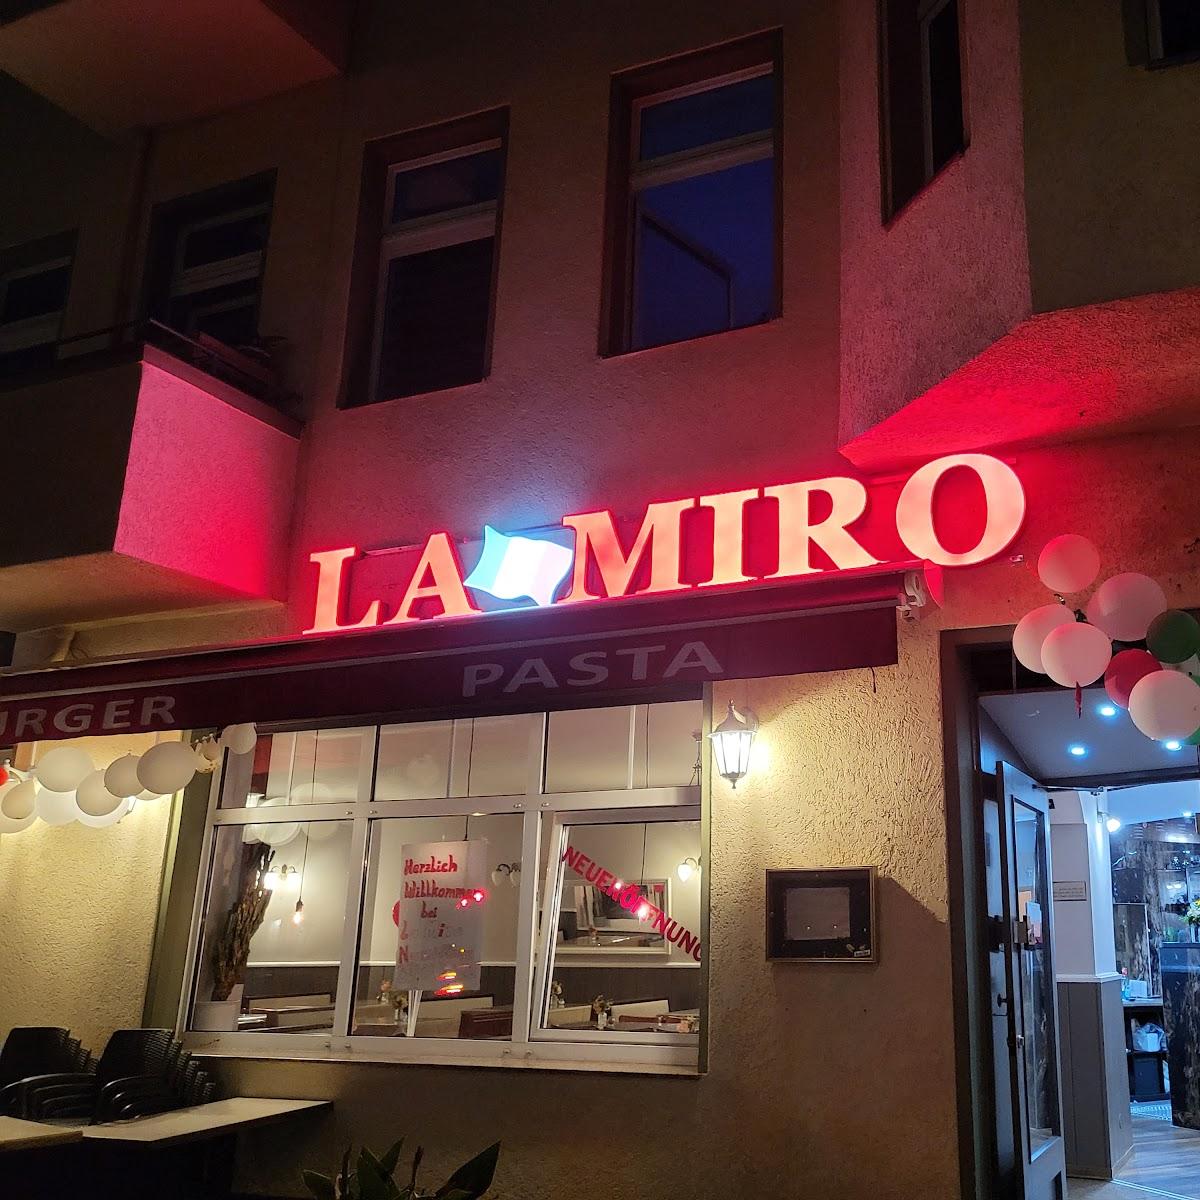 Restaurant "Restaurant La Miro" in Berlin